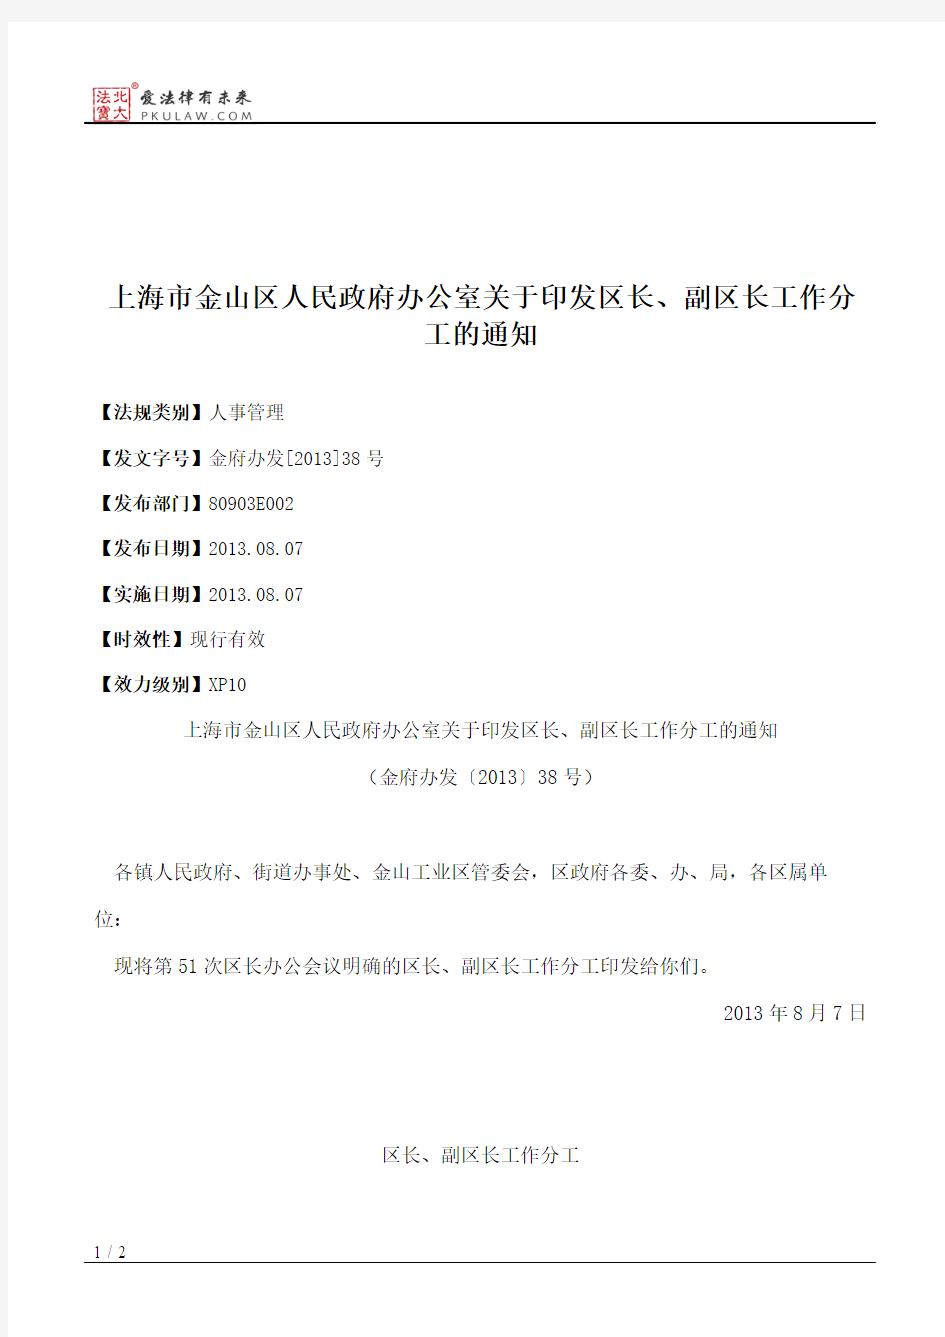 上海市金山区人民政府办公室关于印发区长、副区长工作分工的通知